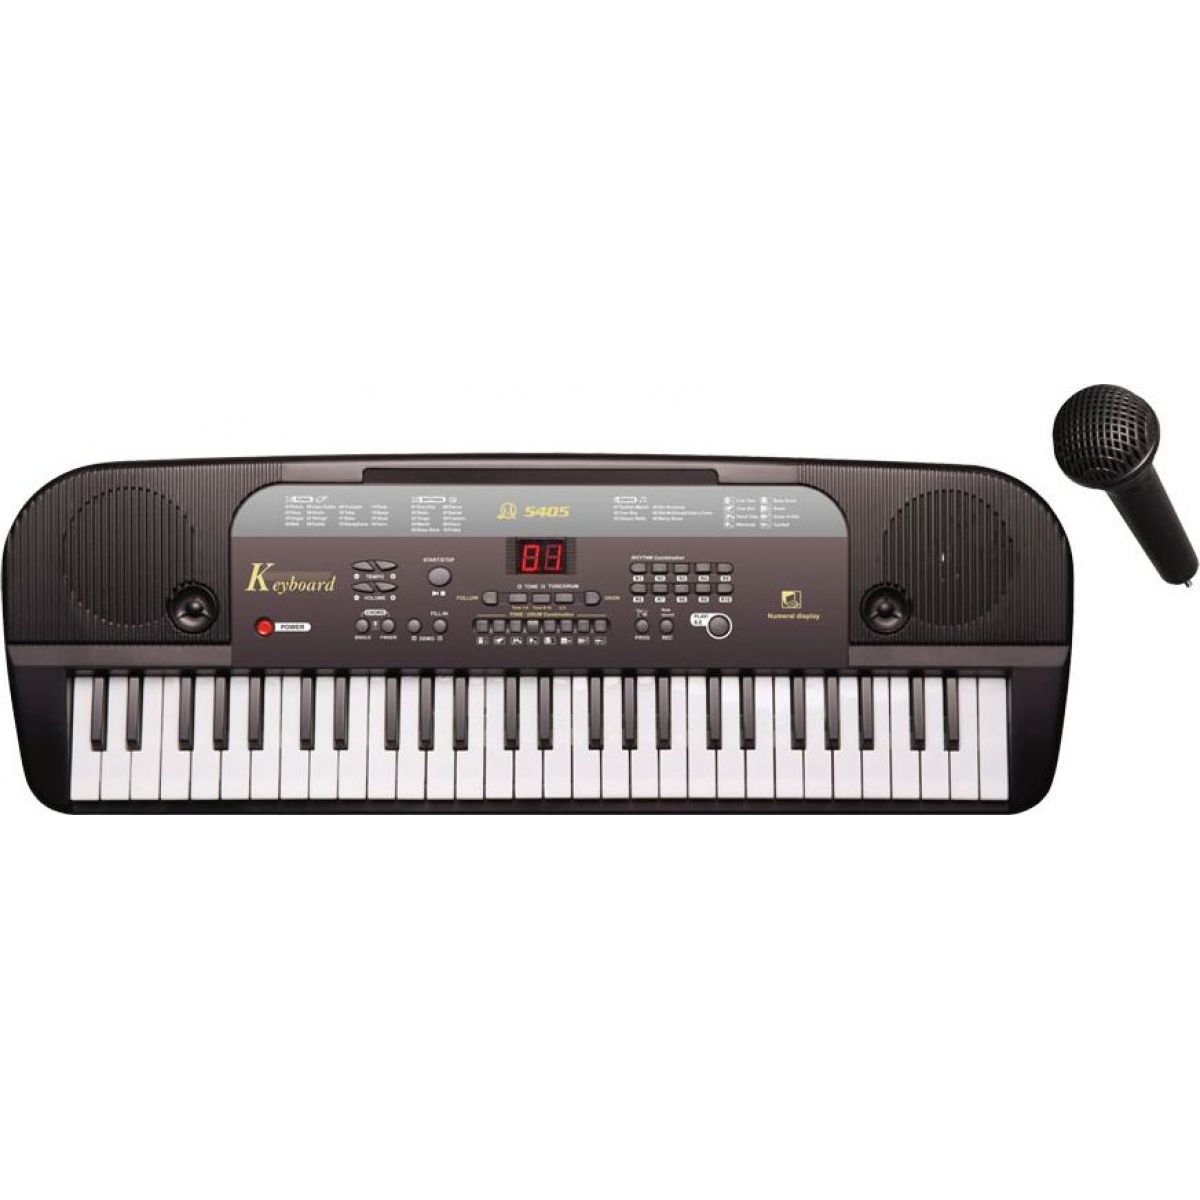 Hm Studio Piano 54 klávesov s mikrofónom